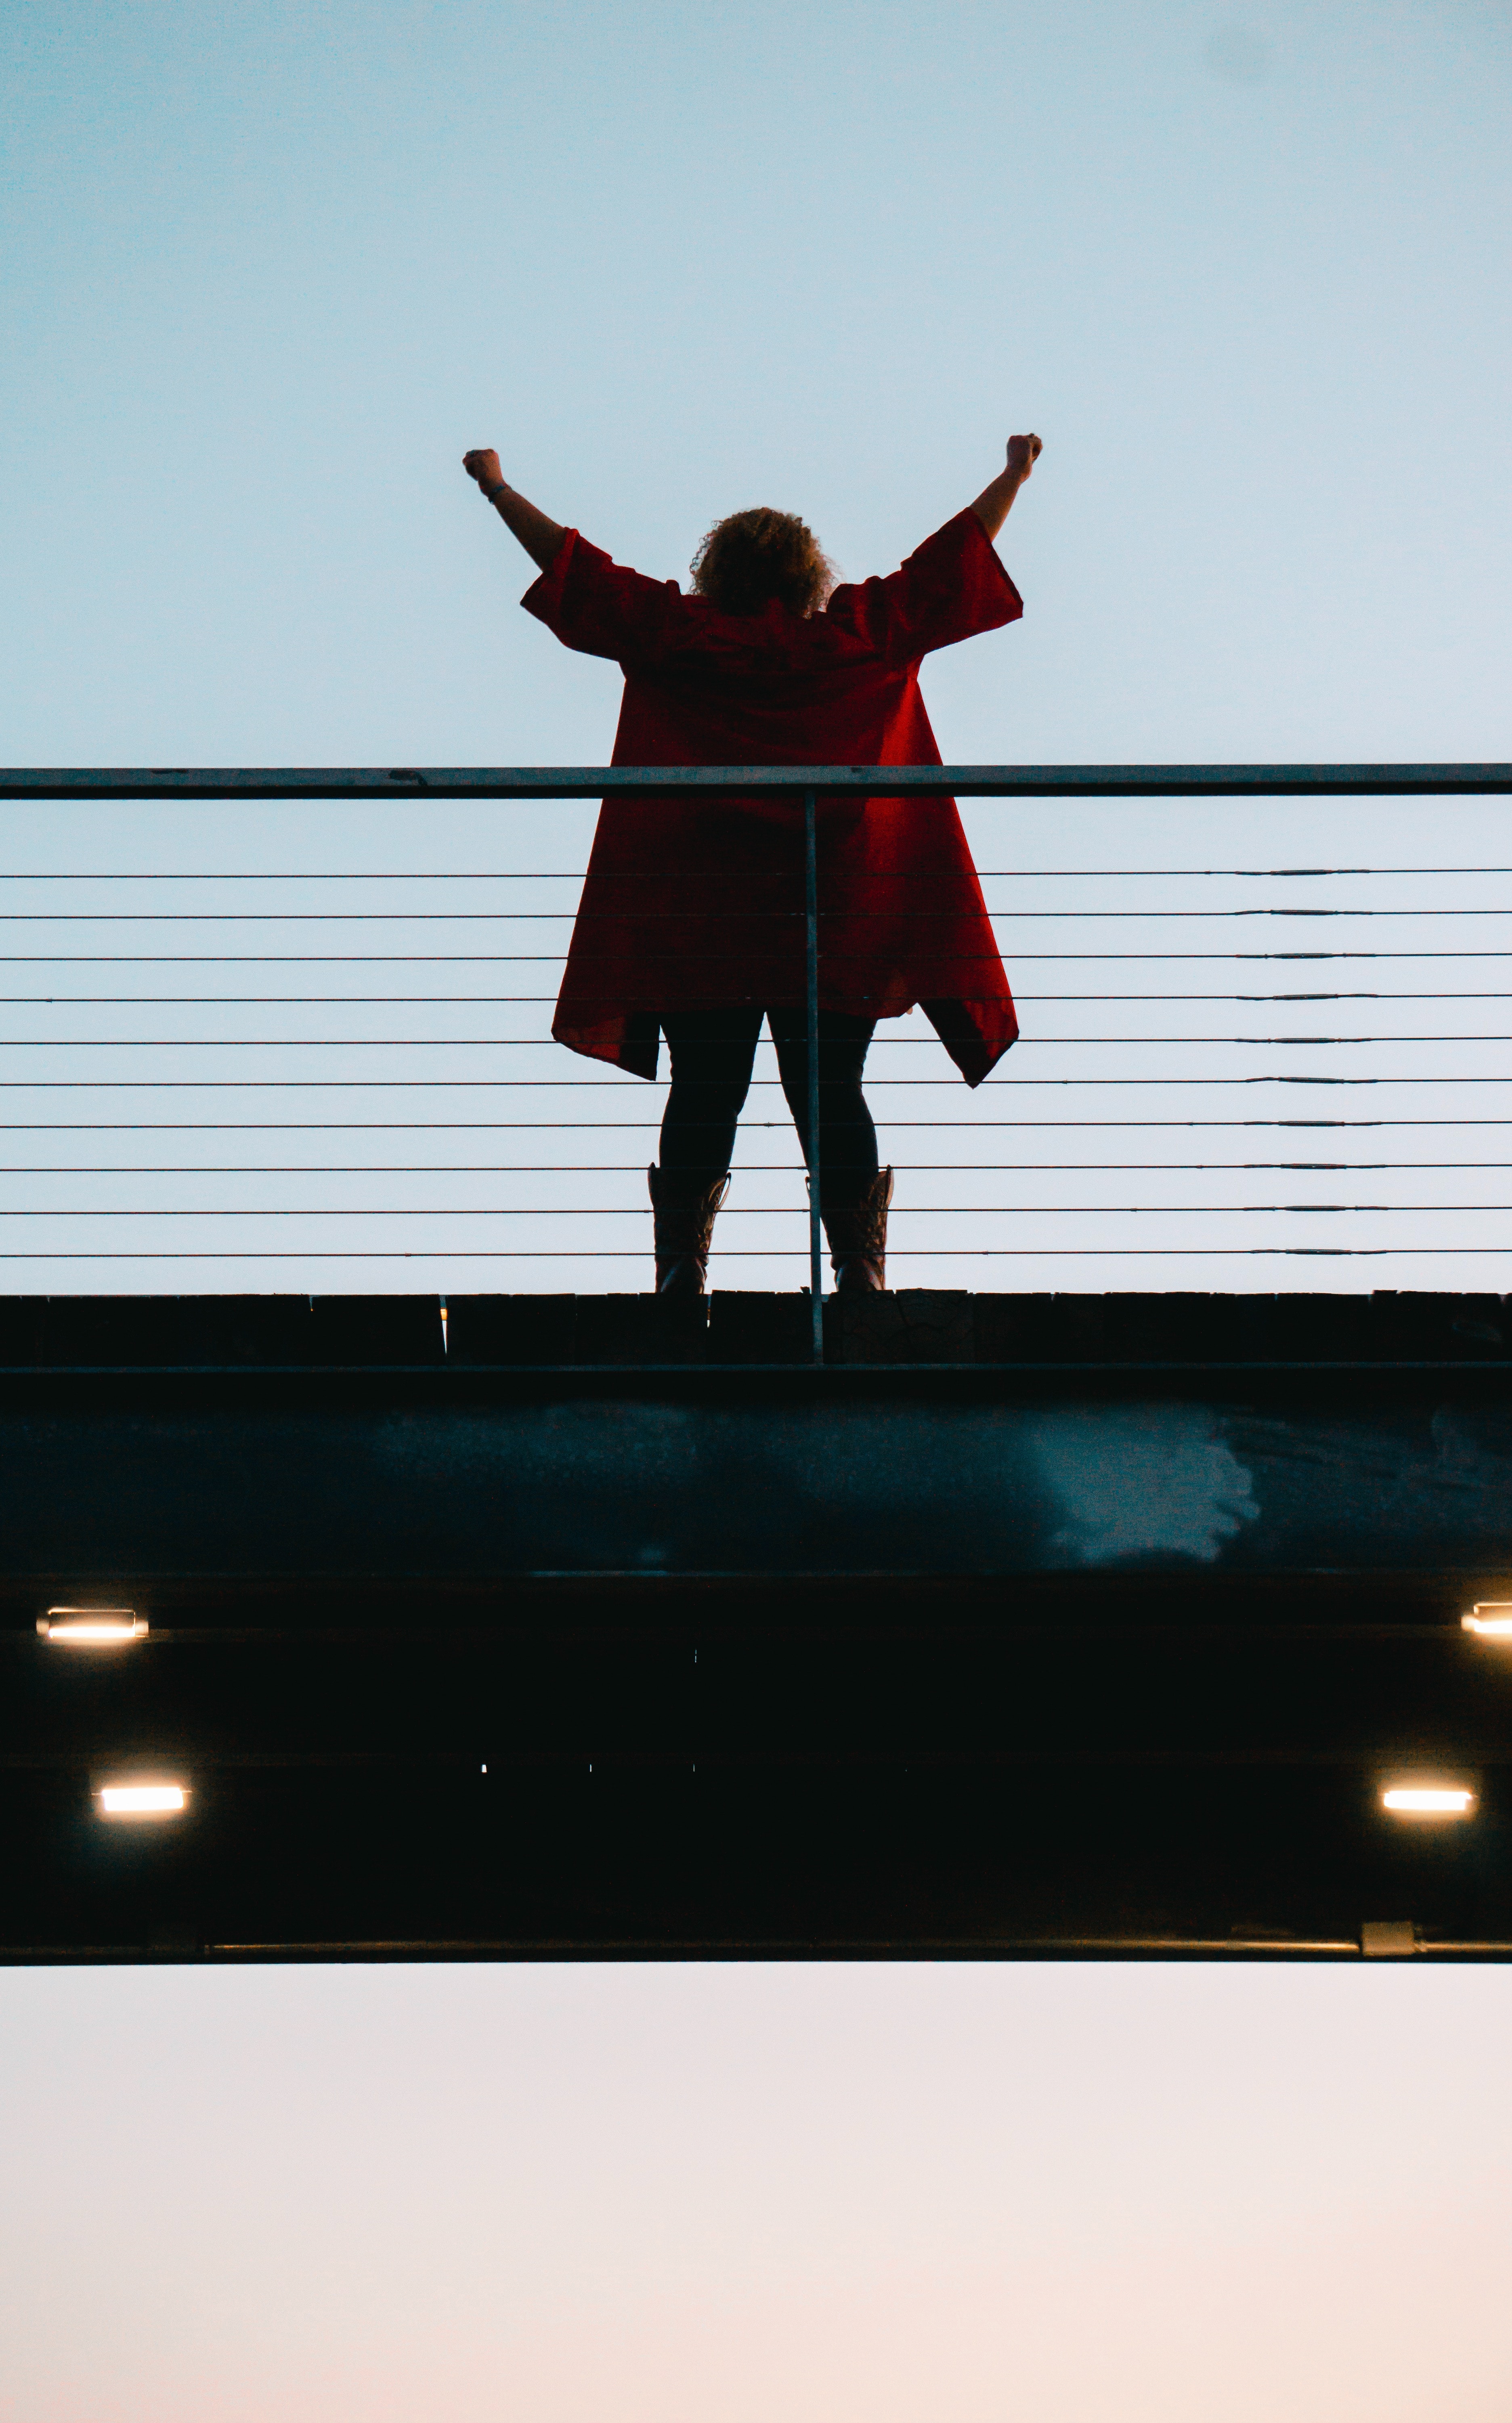 Chica en un puente alzando los brazos con abrigo rojo.